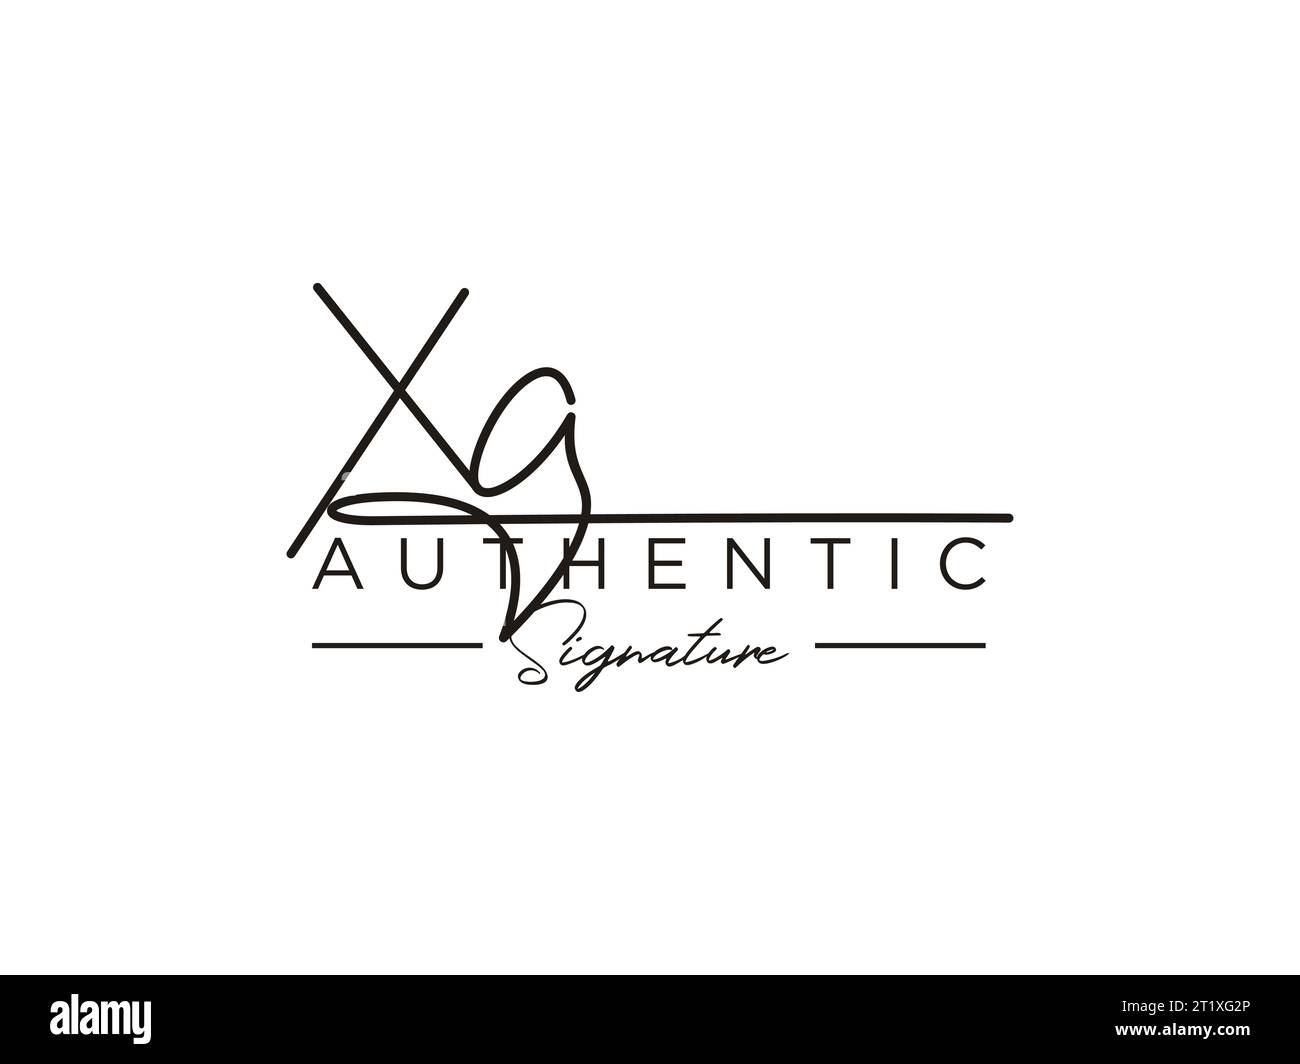 XA Signature Logo Template Vector. Stock Vector